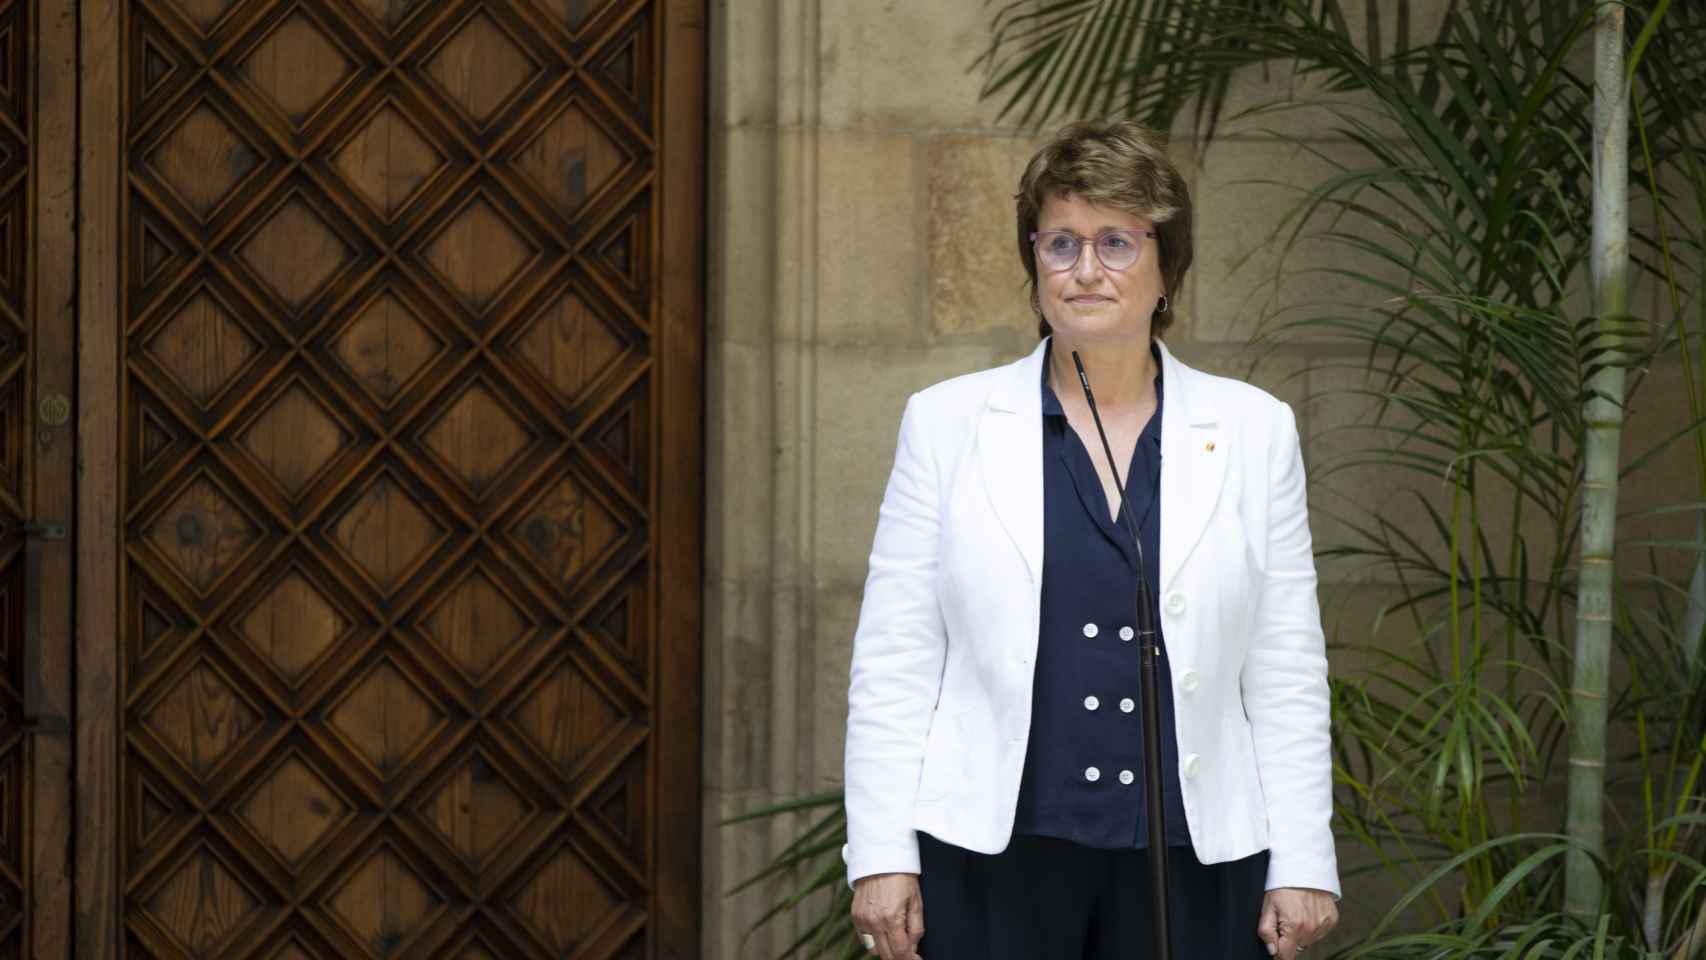 La nueva consellera de Educación, Anna Simó, interviene durante la jura de su nuevo cargo, en el Palau de la Generalitat